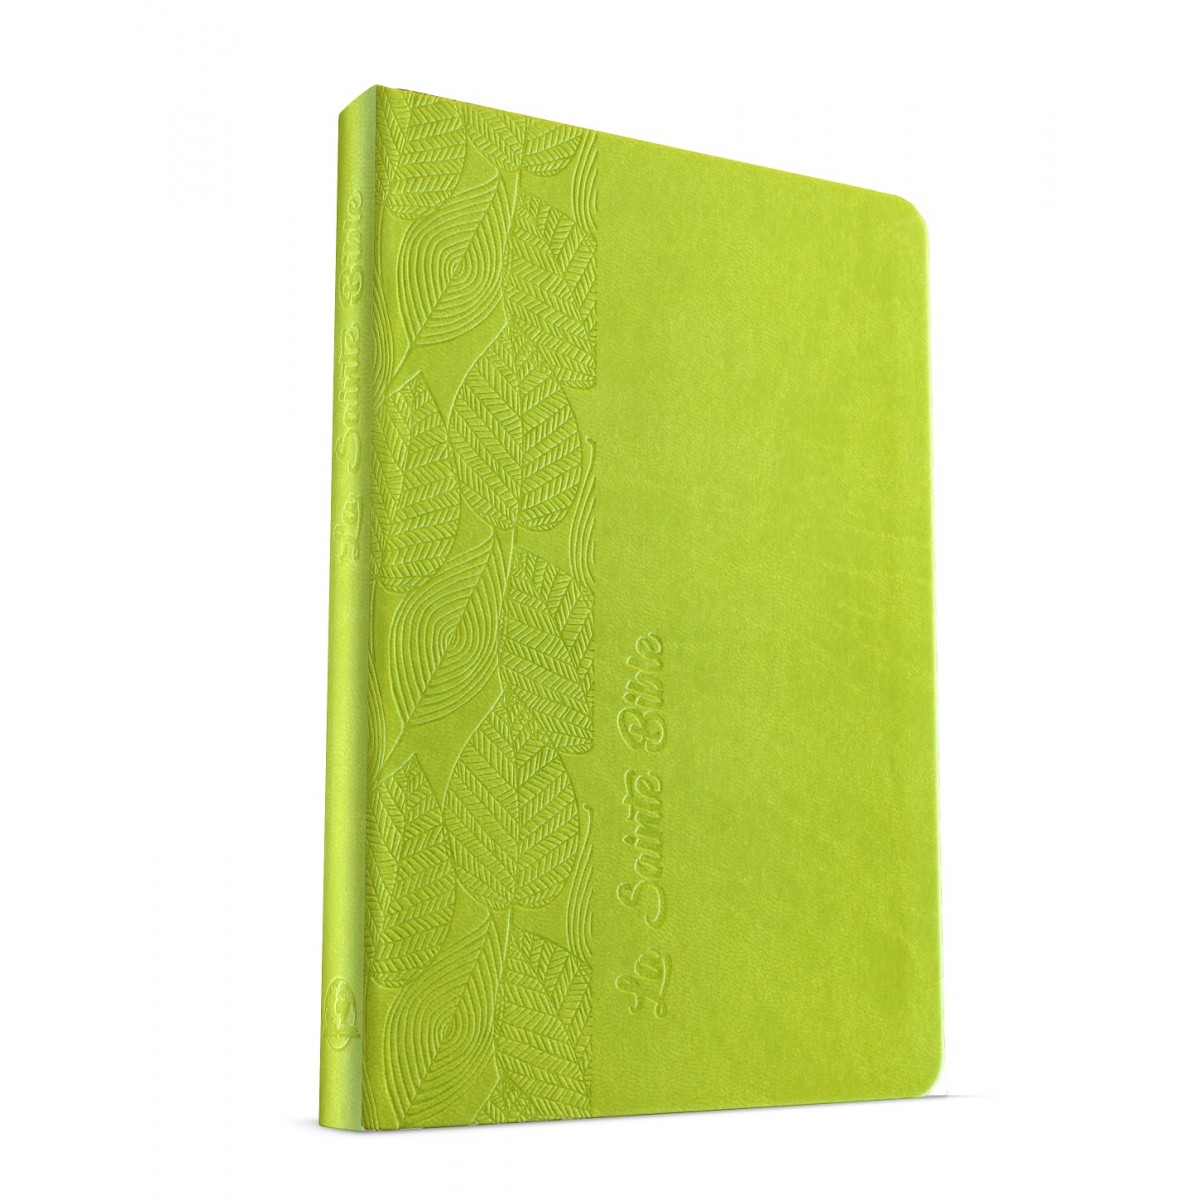 Bible Segond 1880, compacte, vert motif feuilles - couverture souple, vivella